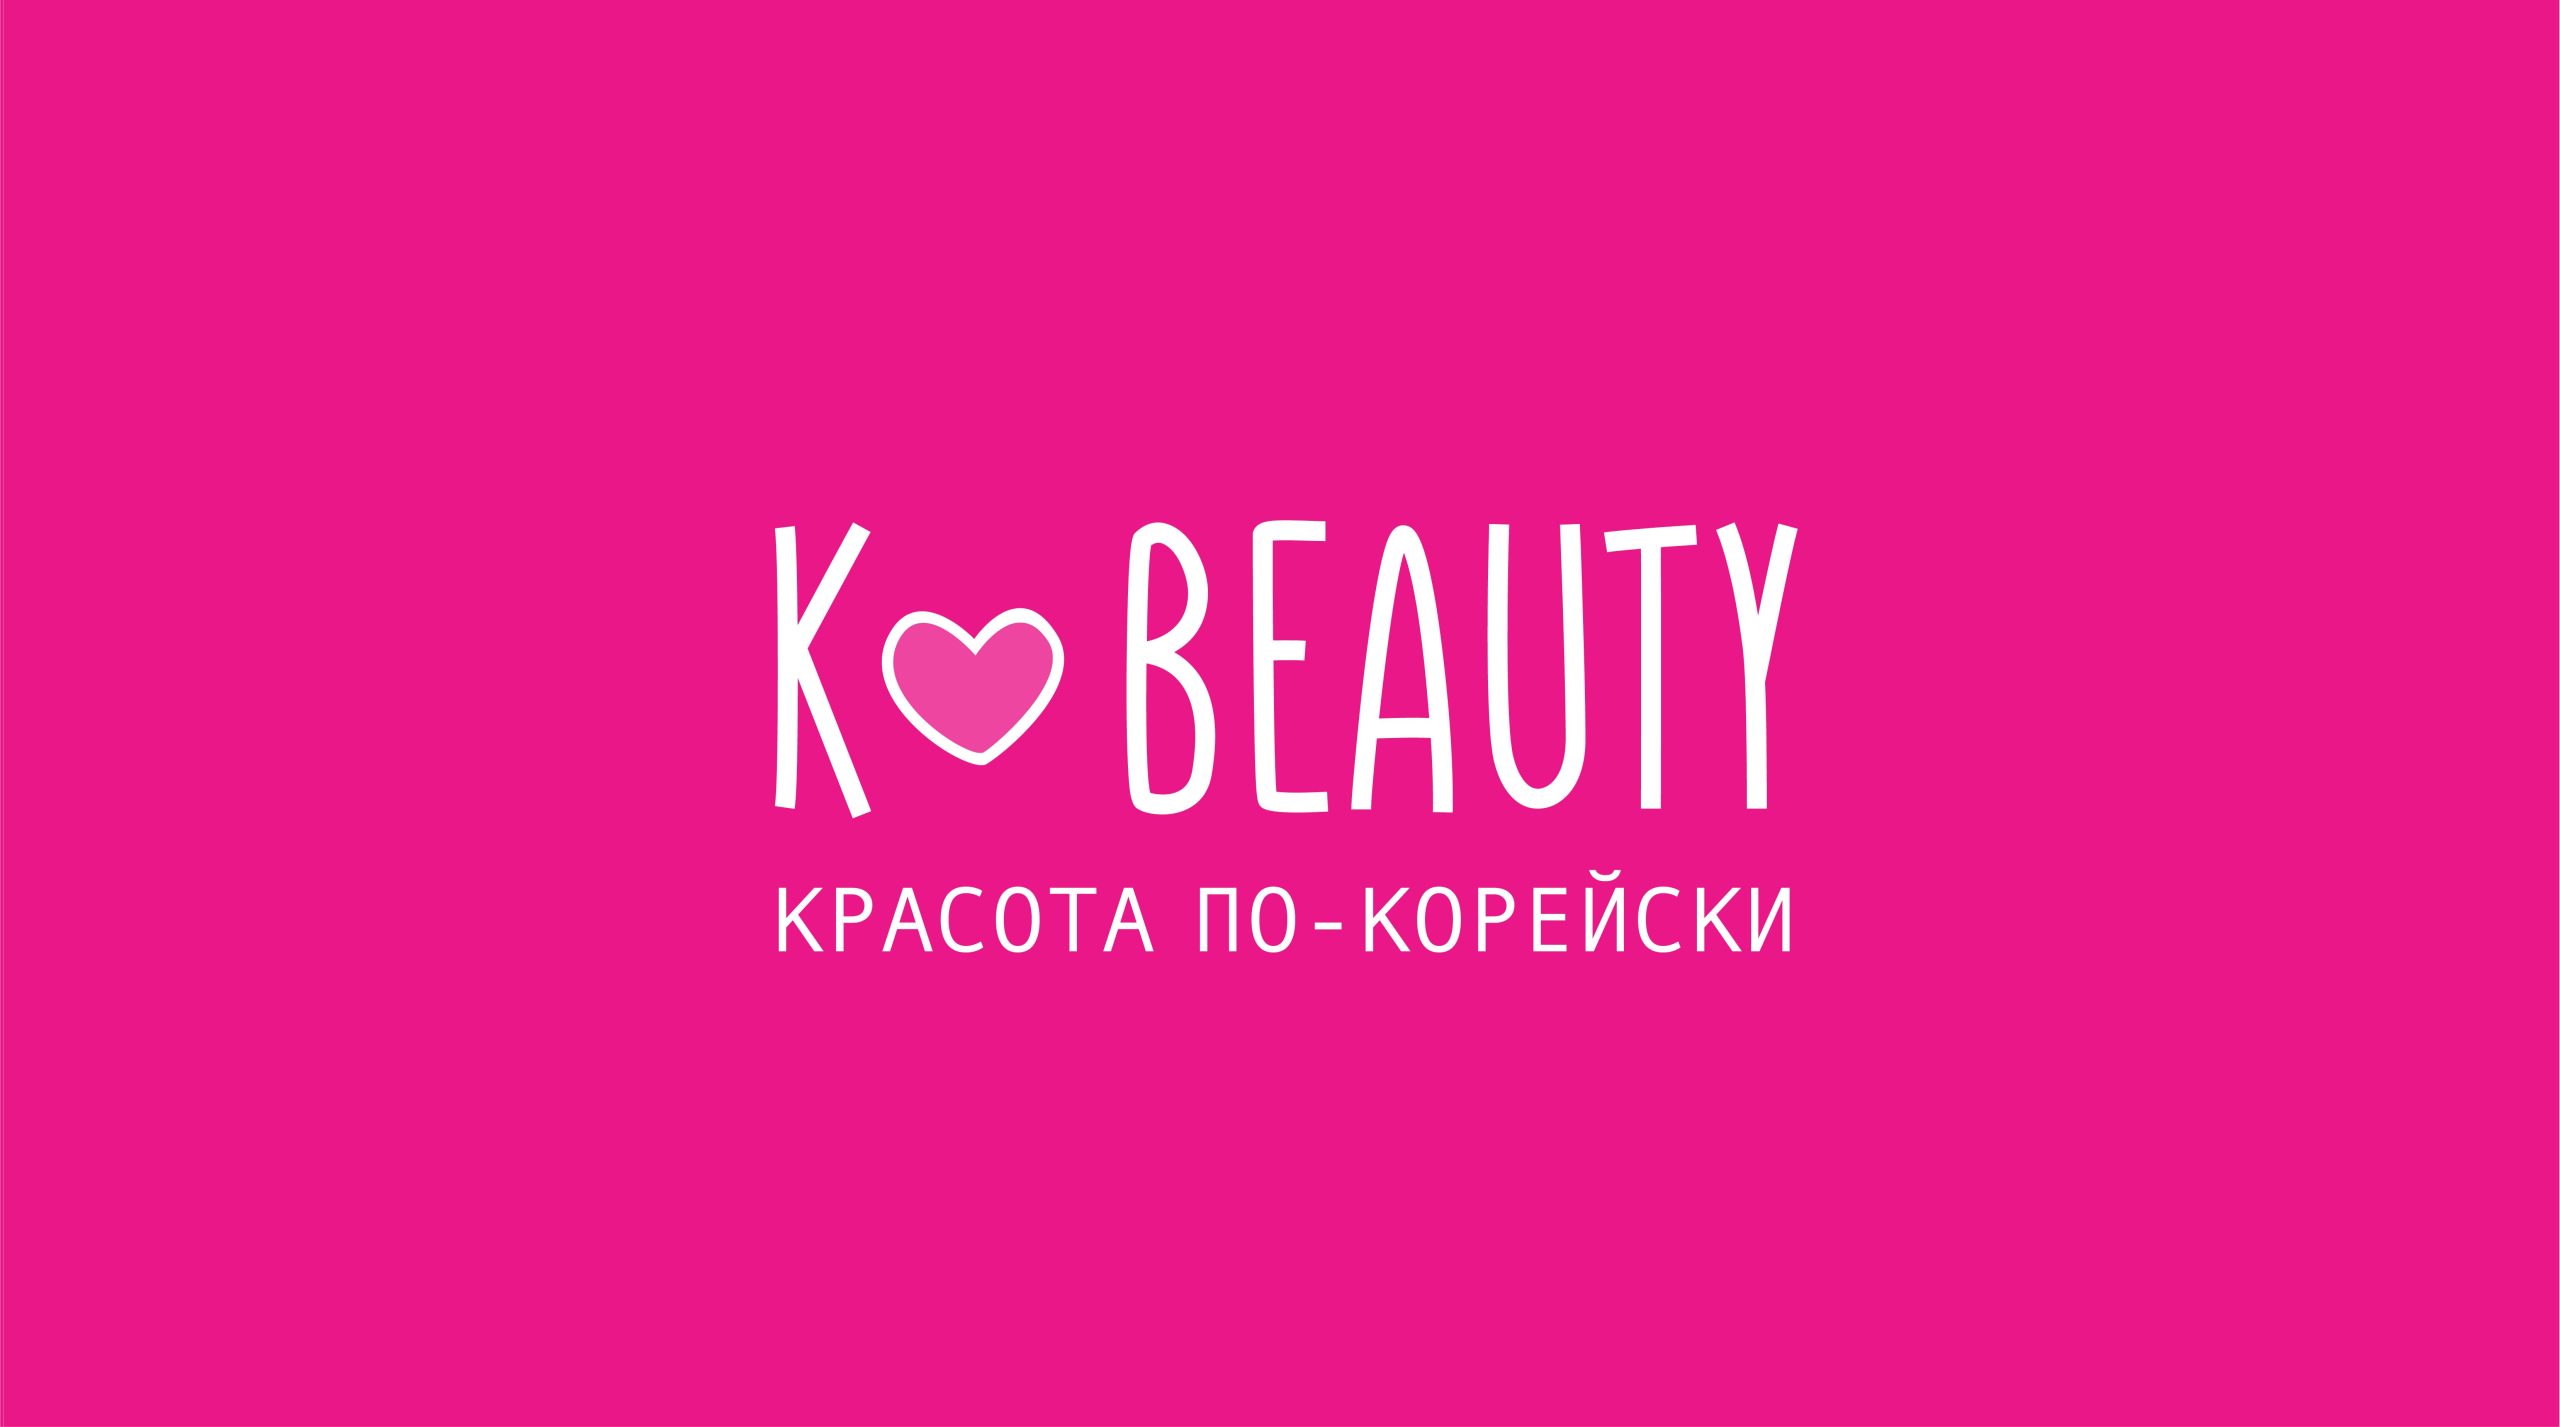 Логотипы косметический продукции